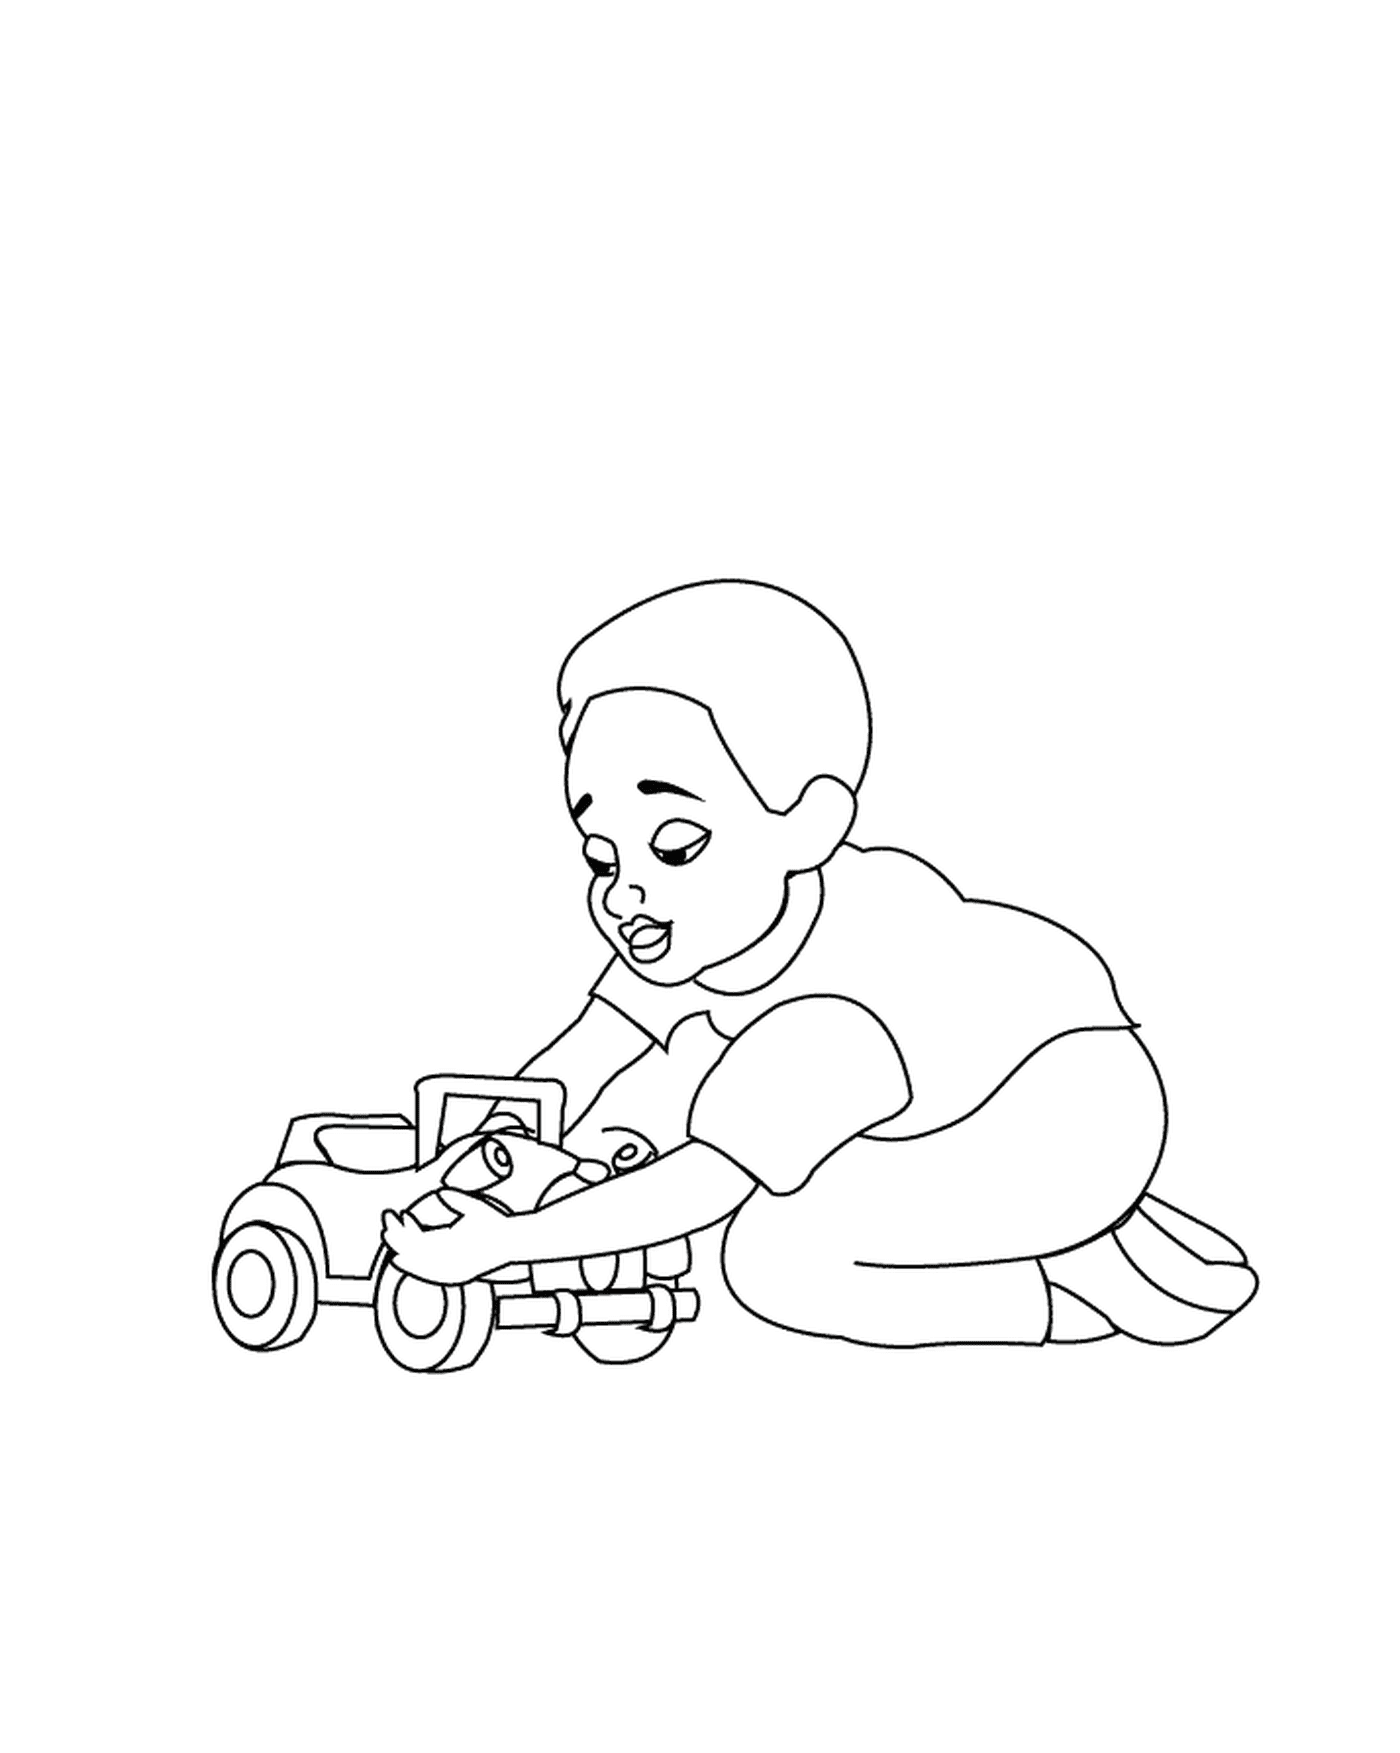  Uma criança brinca com um carro de brinquedo 